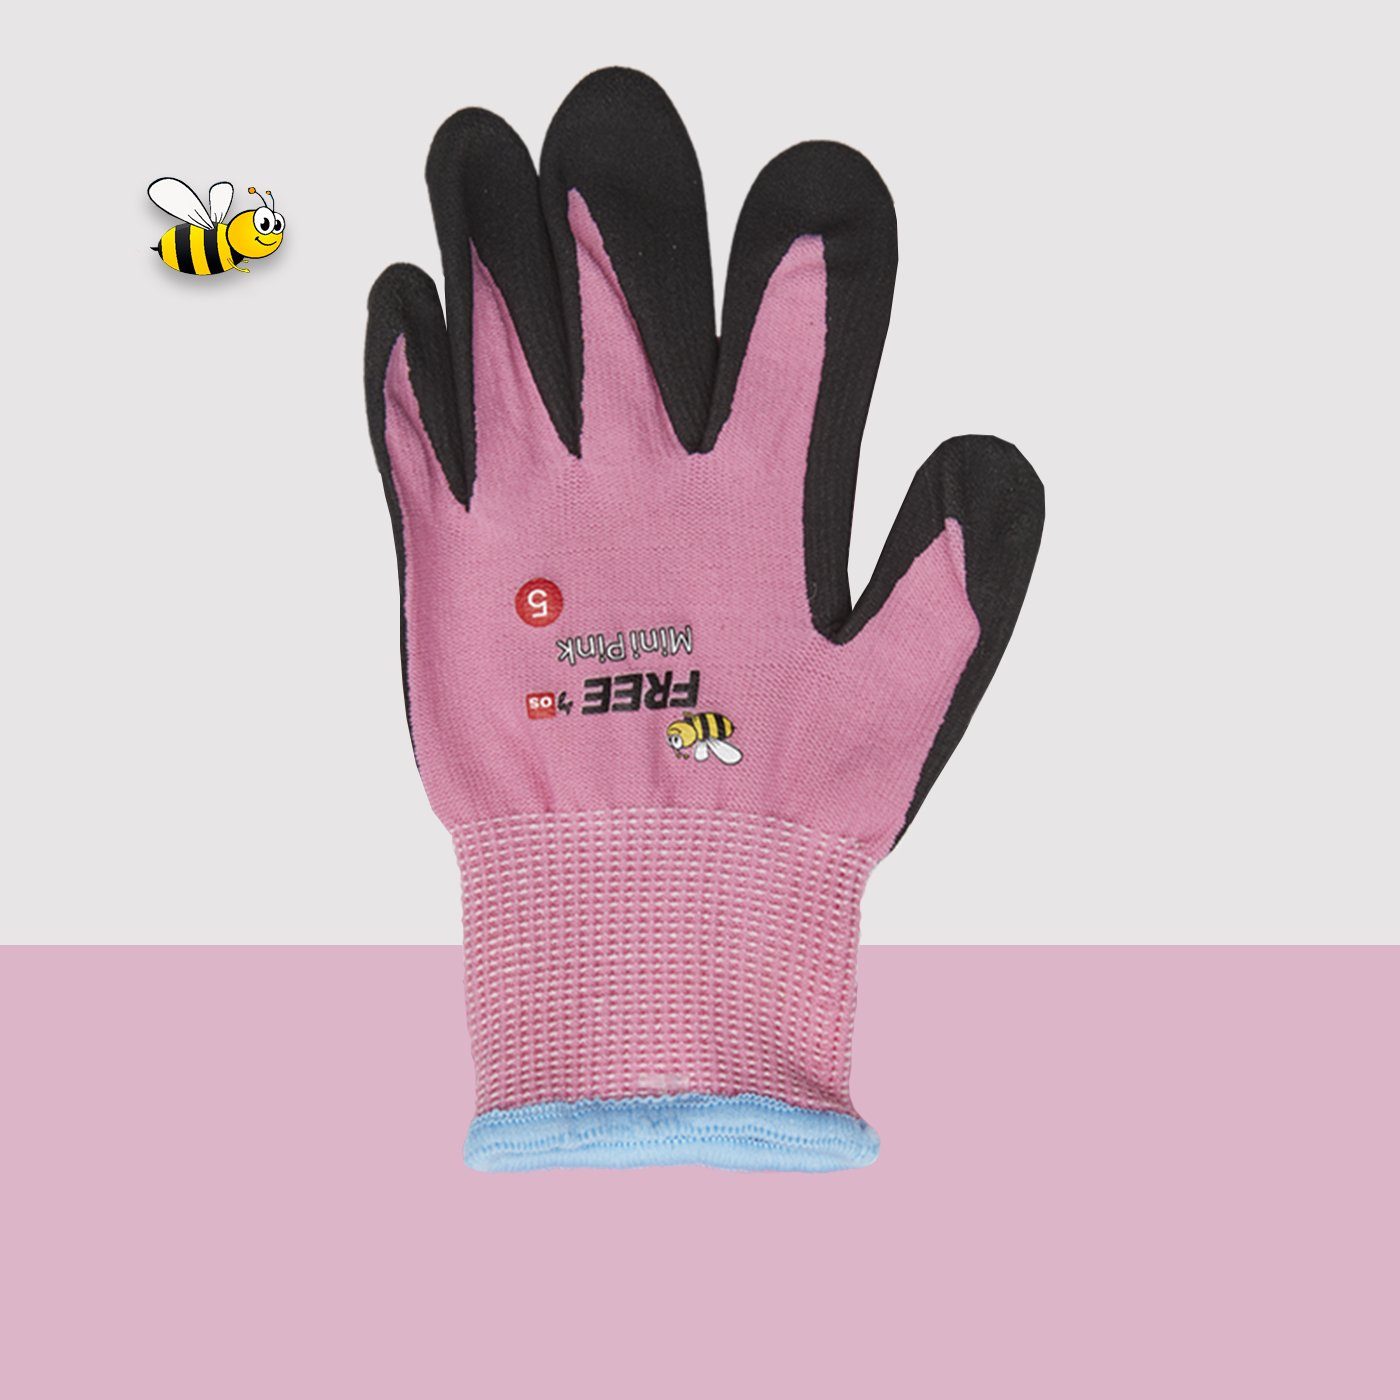 5 1198830) für GUARD in kleine wasserabweisend Gartenhandschuhe pink Gärtner Kinder-Gartenhandschuhe -(Art